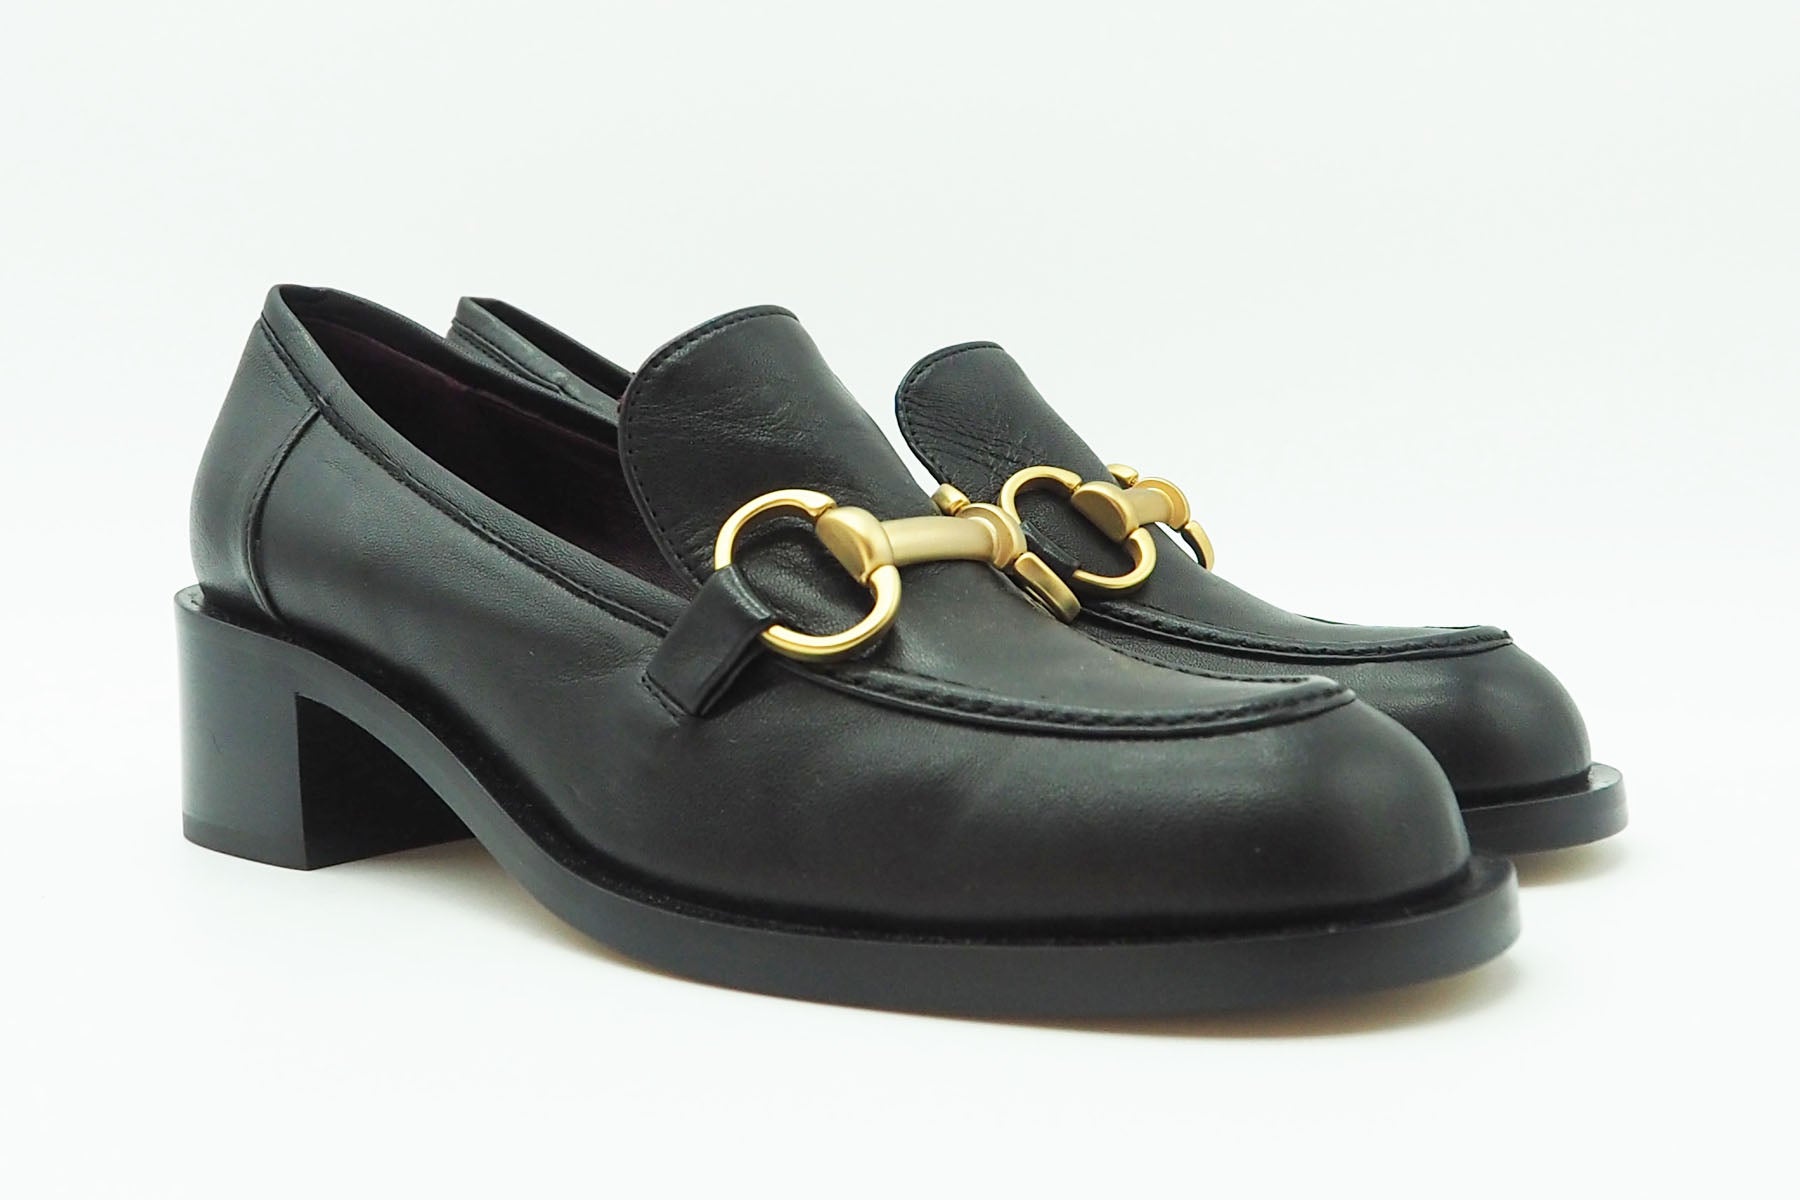 Damen Loafer aus Glattleder in Schwarz - Absatz 4cm Damen Loafers & Schnürer Pomme D'or